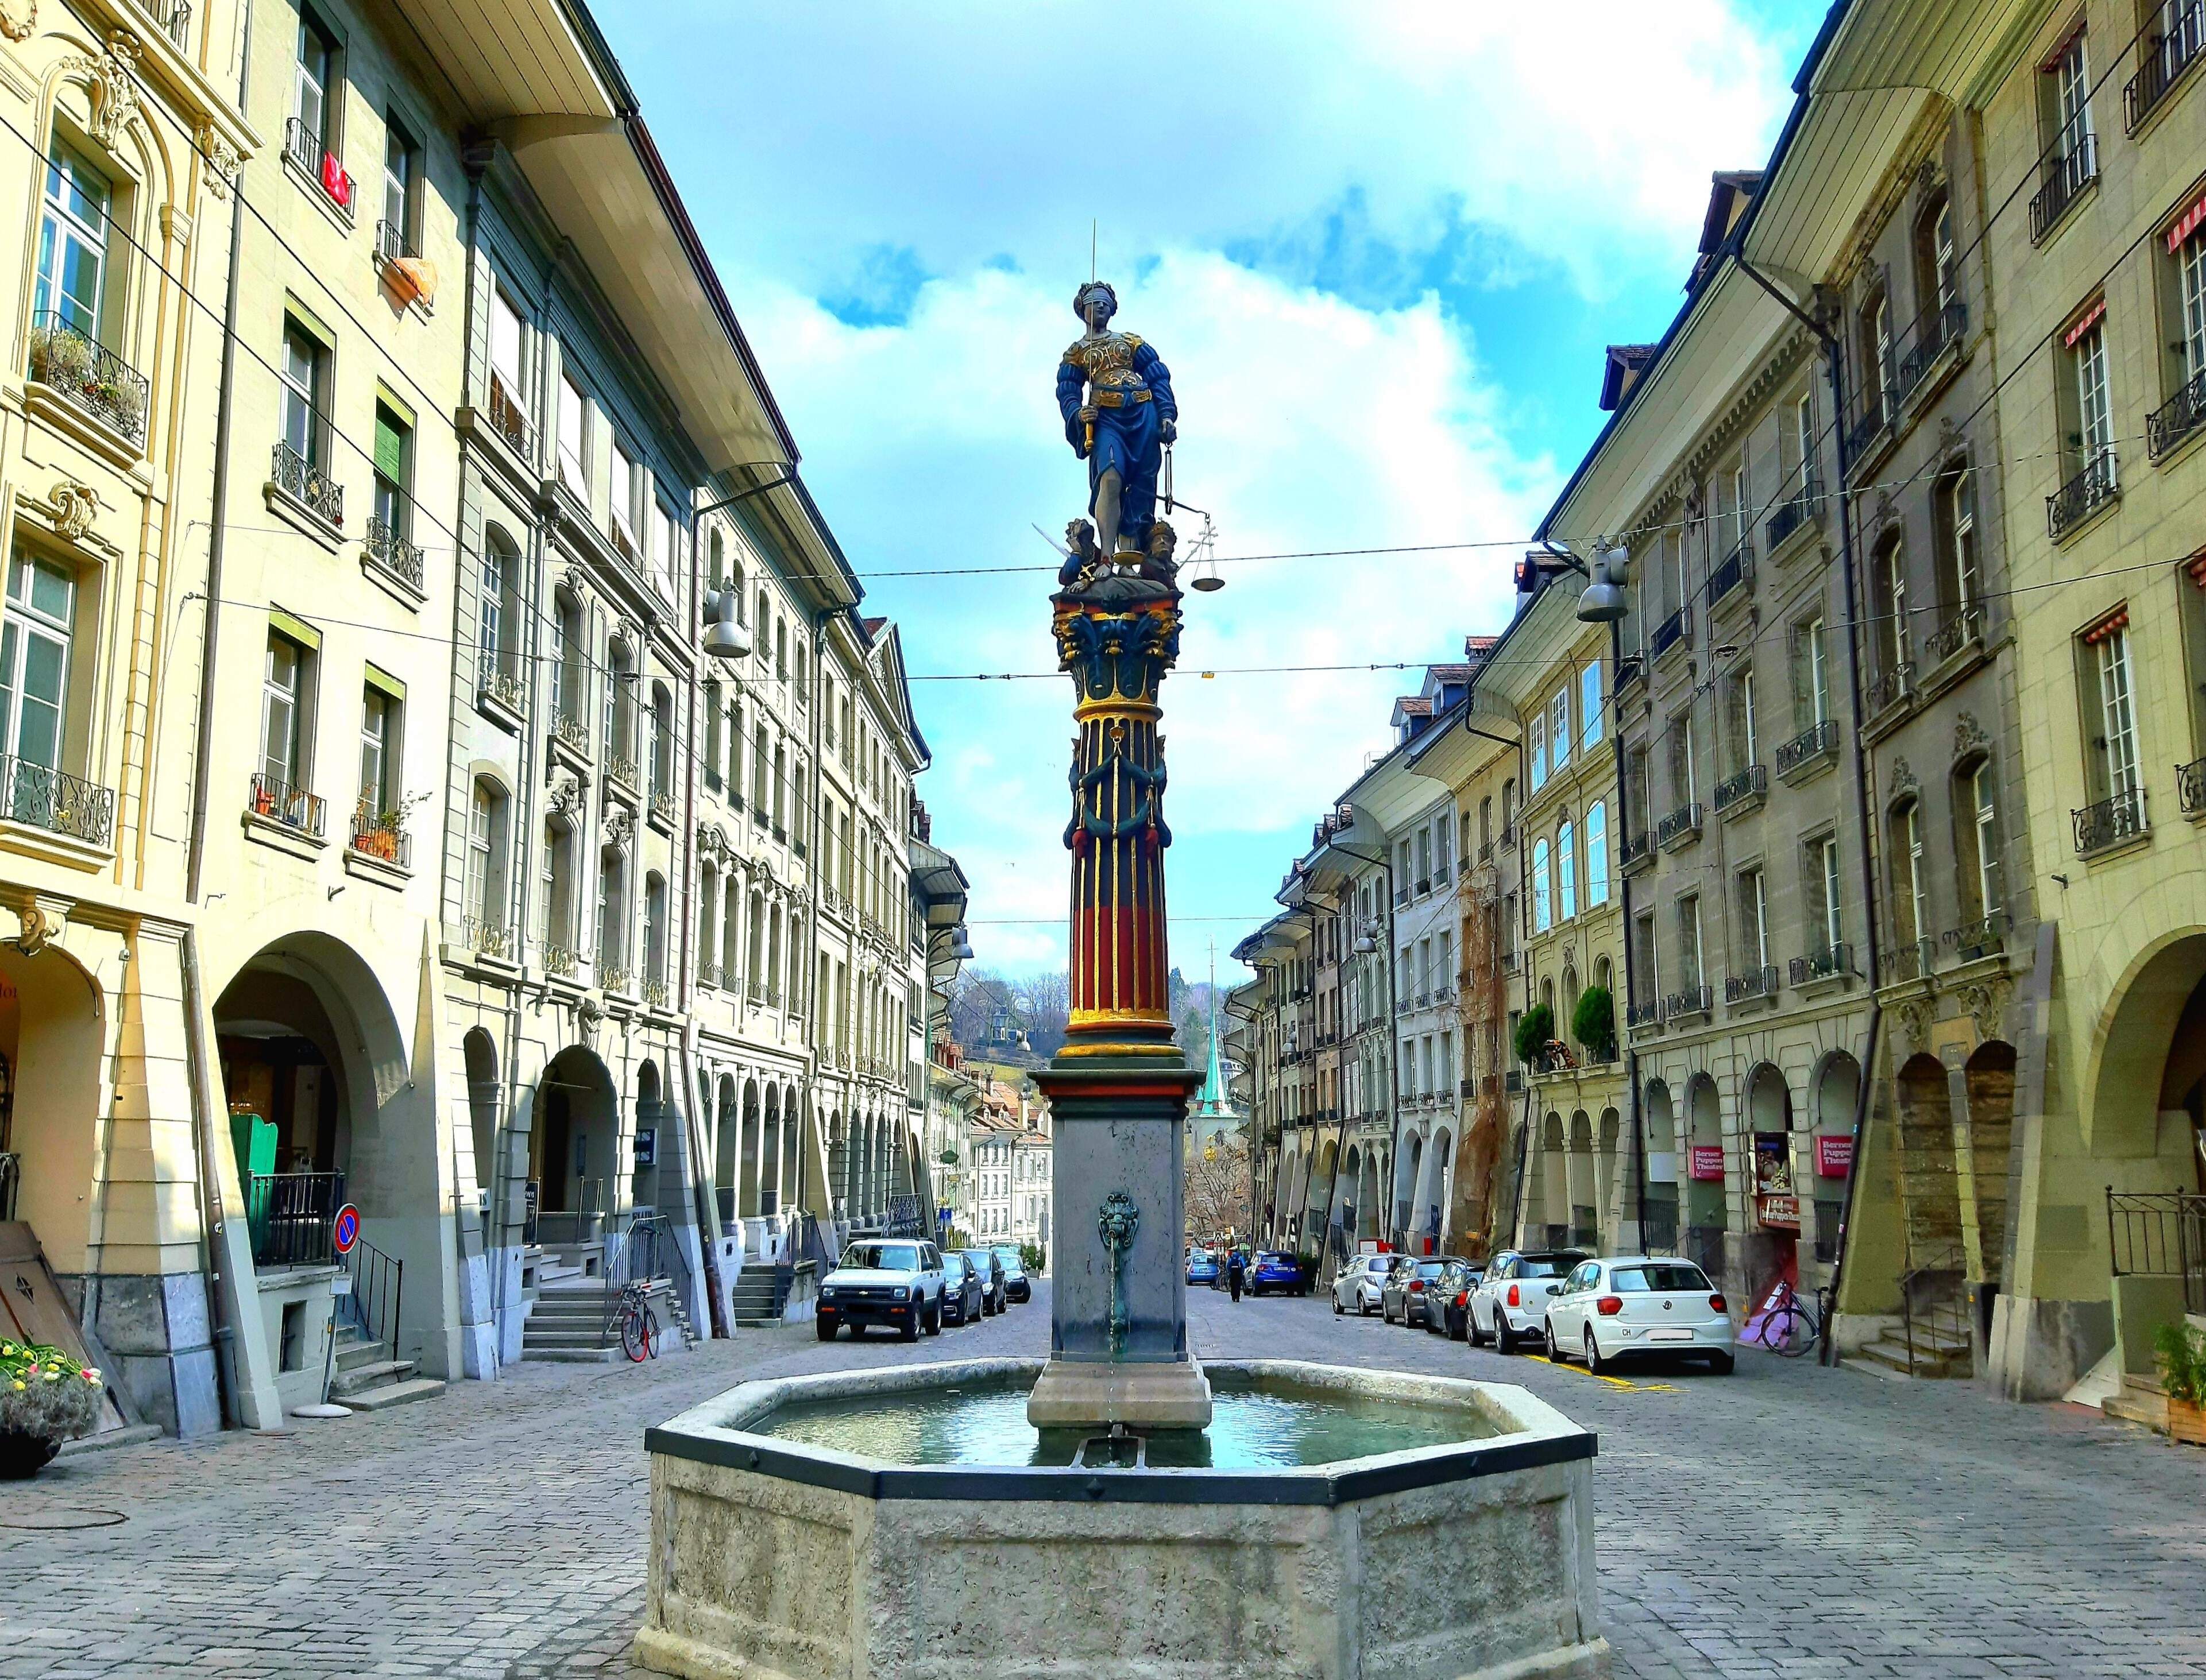 Gerechtigkeitsbrunnen (Fountain of Justice)